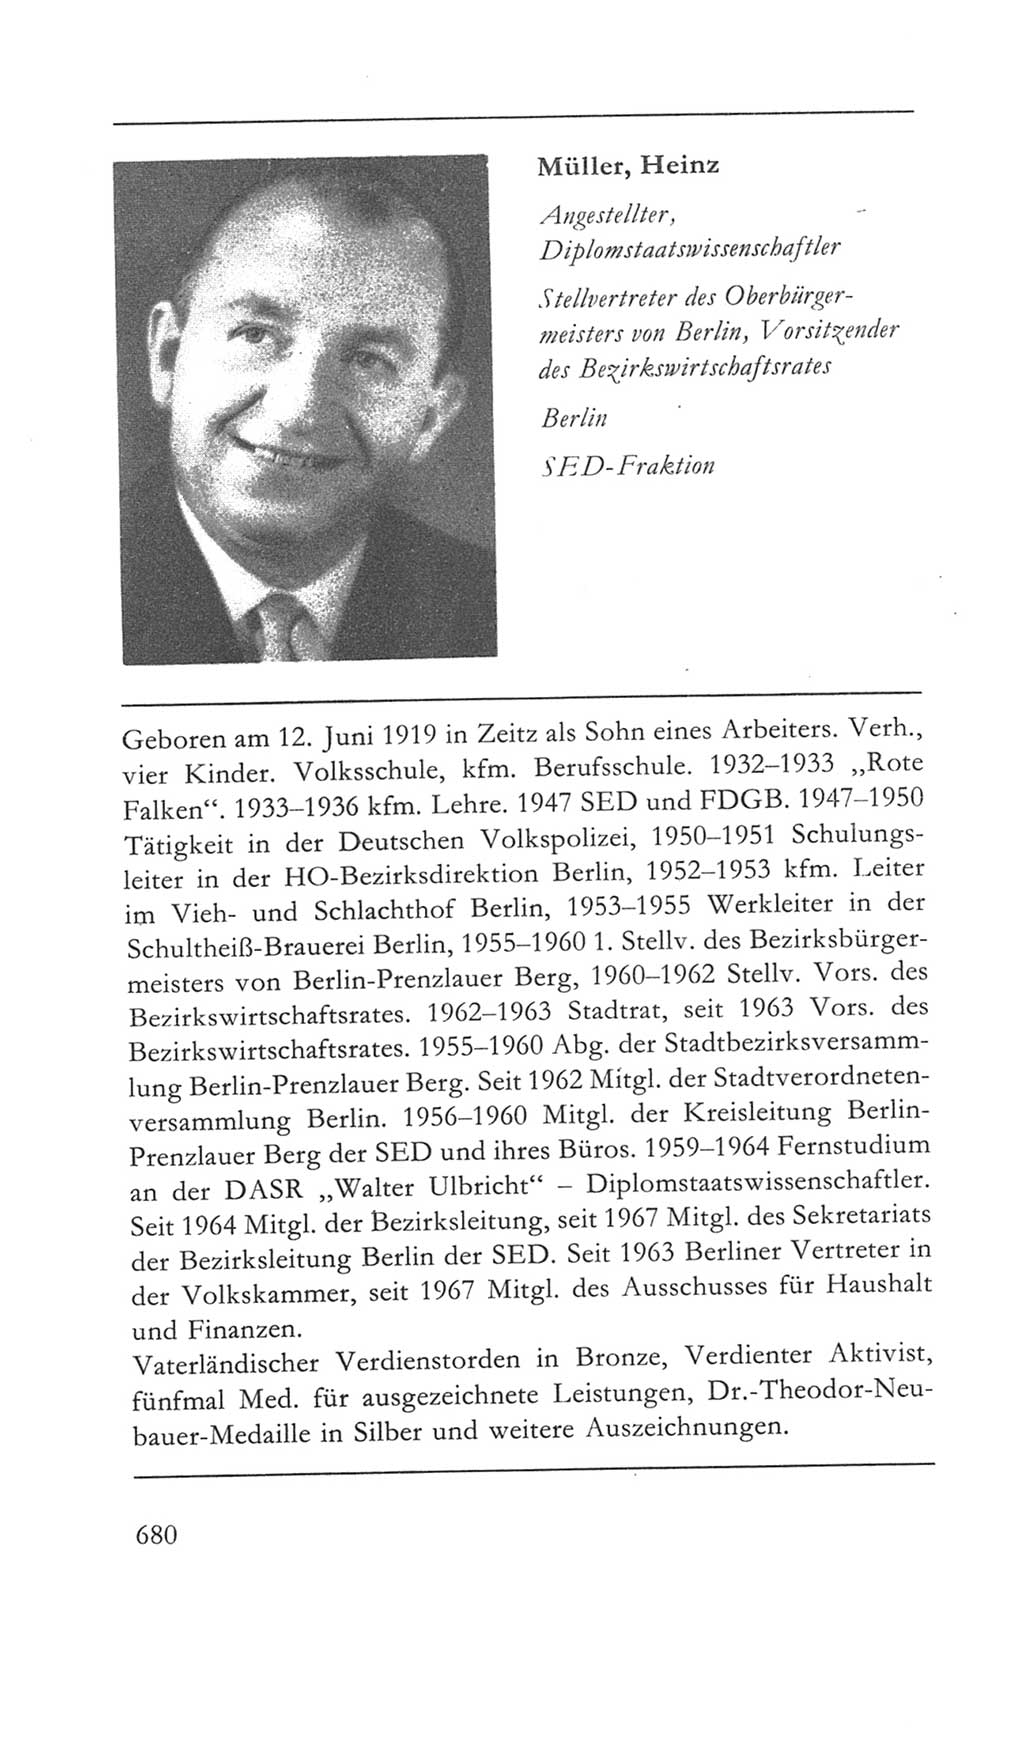 Volkskammer (VK) der Deutschen Demokratischen Republik (DDR) 5. Wahlperiode 1967-1971, Seite 680 (VK. DDR 5. WP. 1967-1971, S. 680)